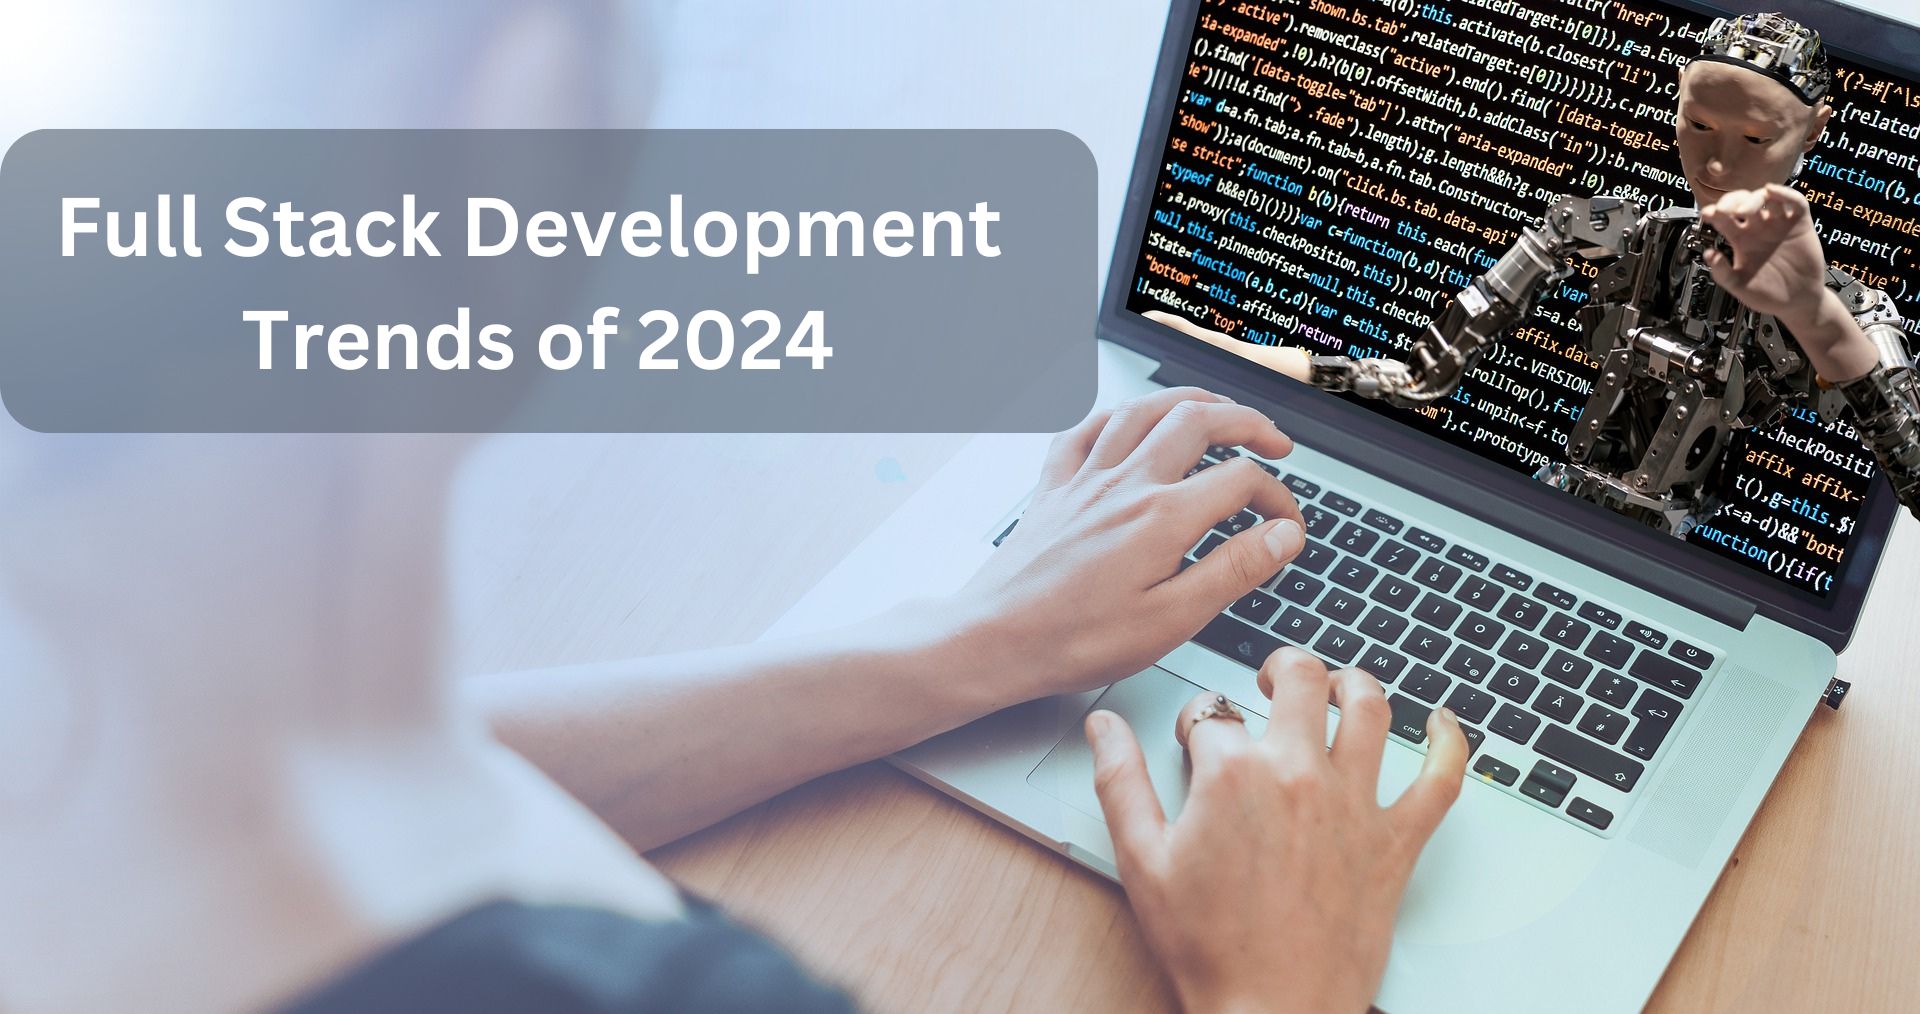 Full Stack Development Trends of 2024